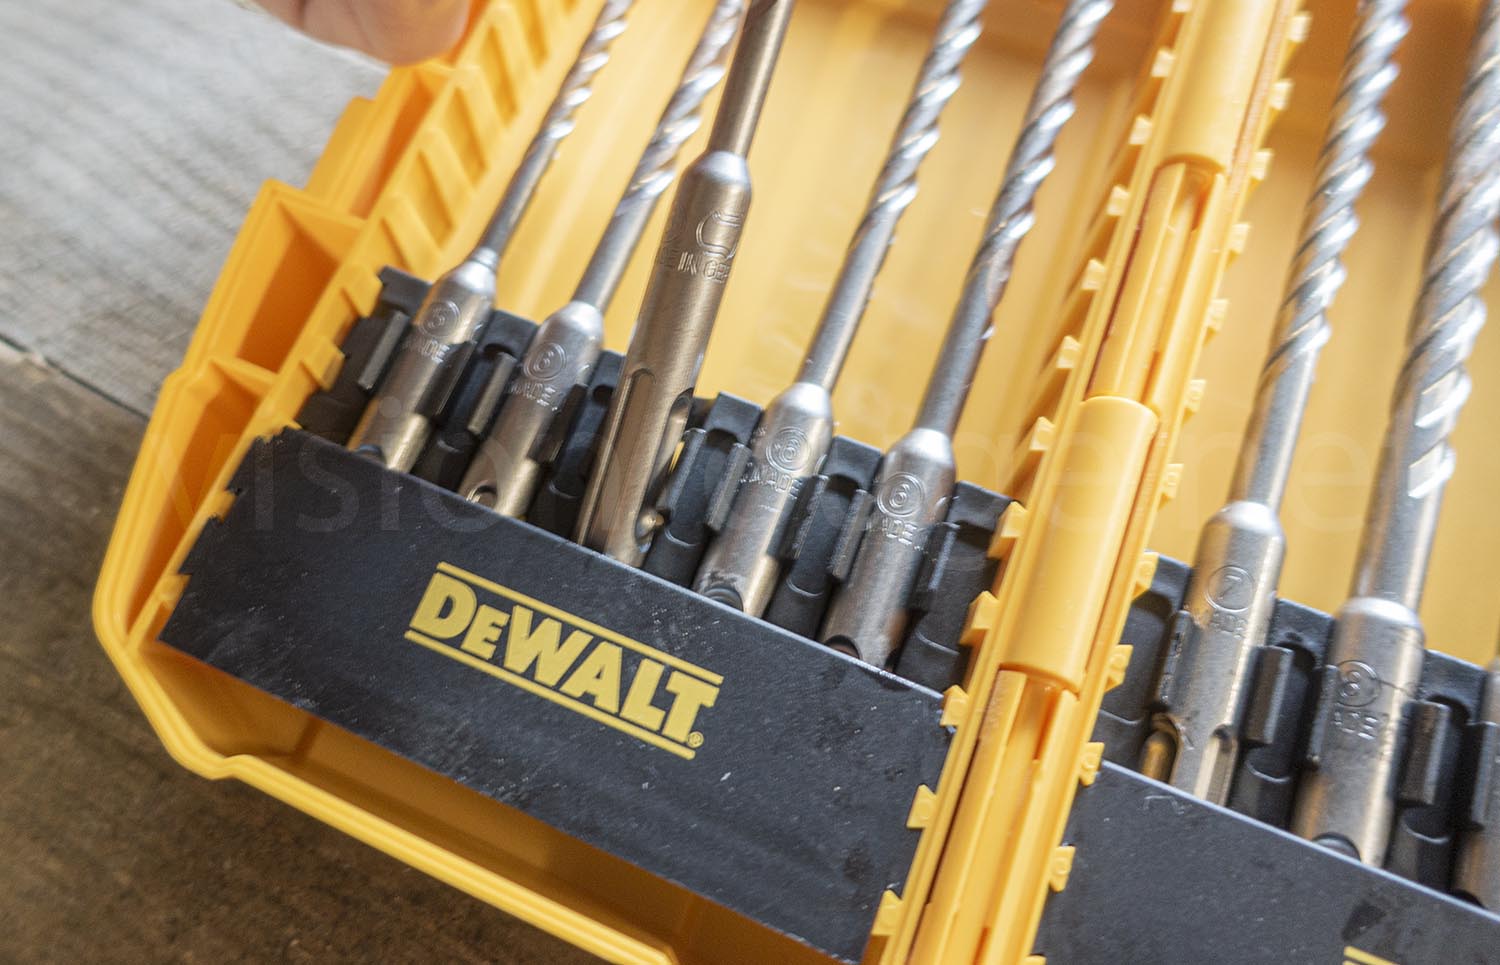 DeWalt SDS drill set box